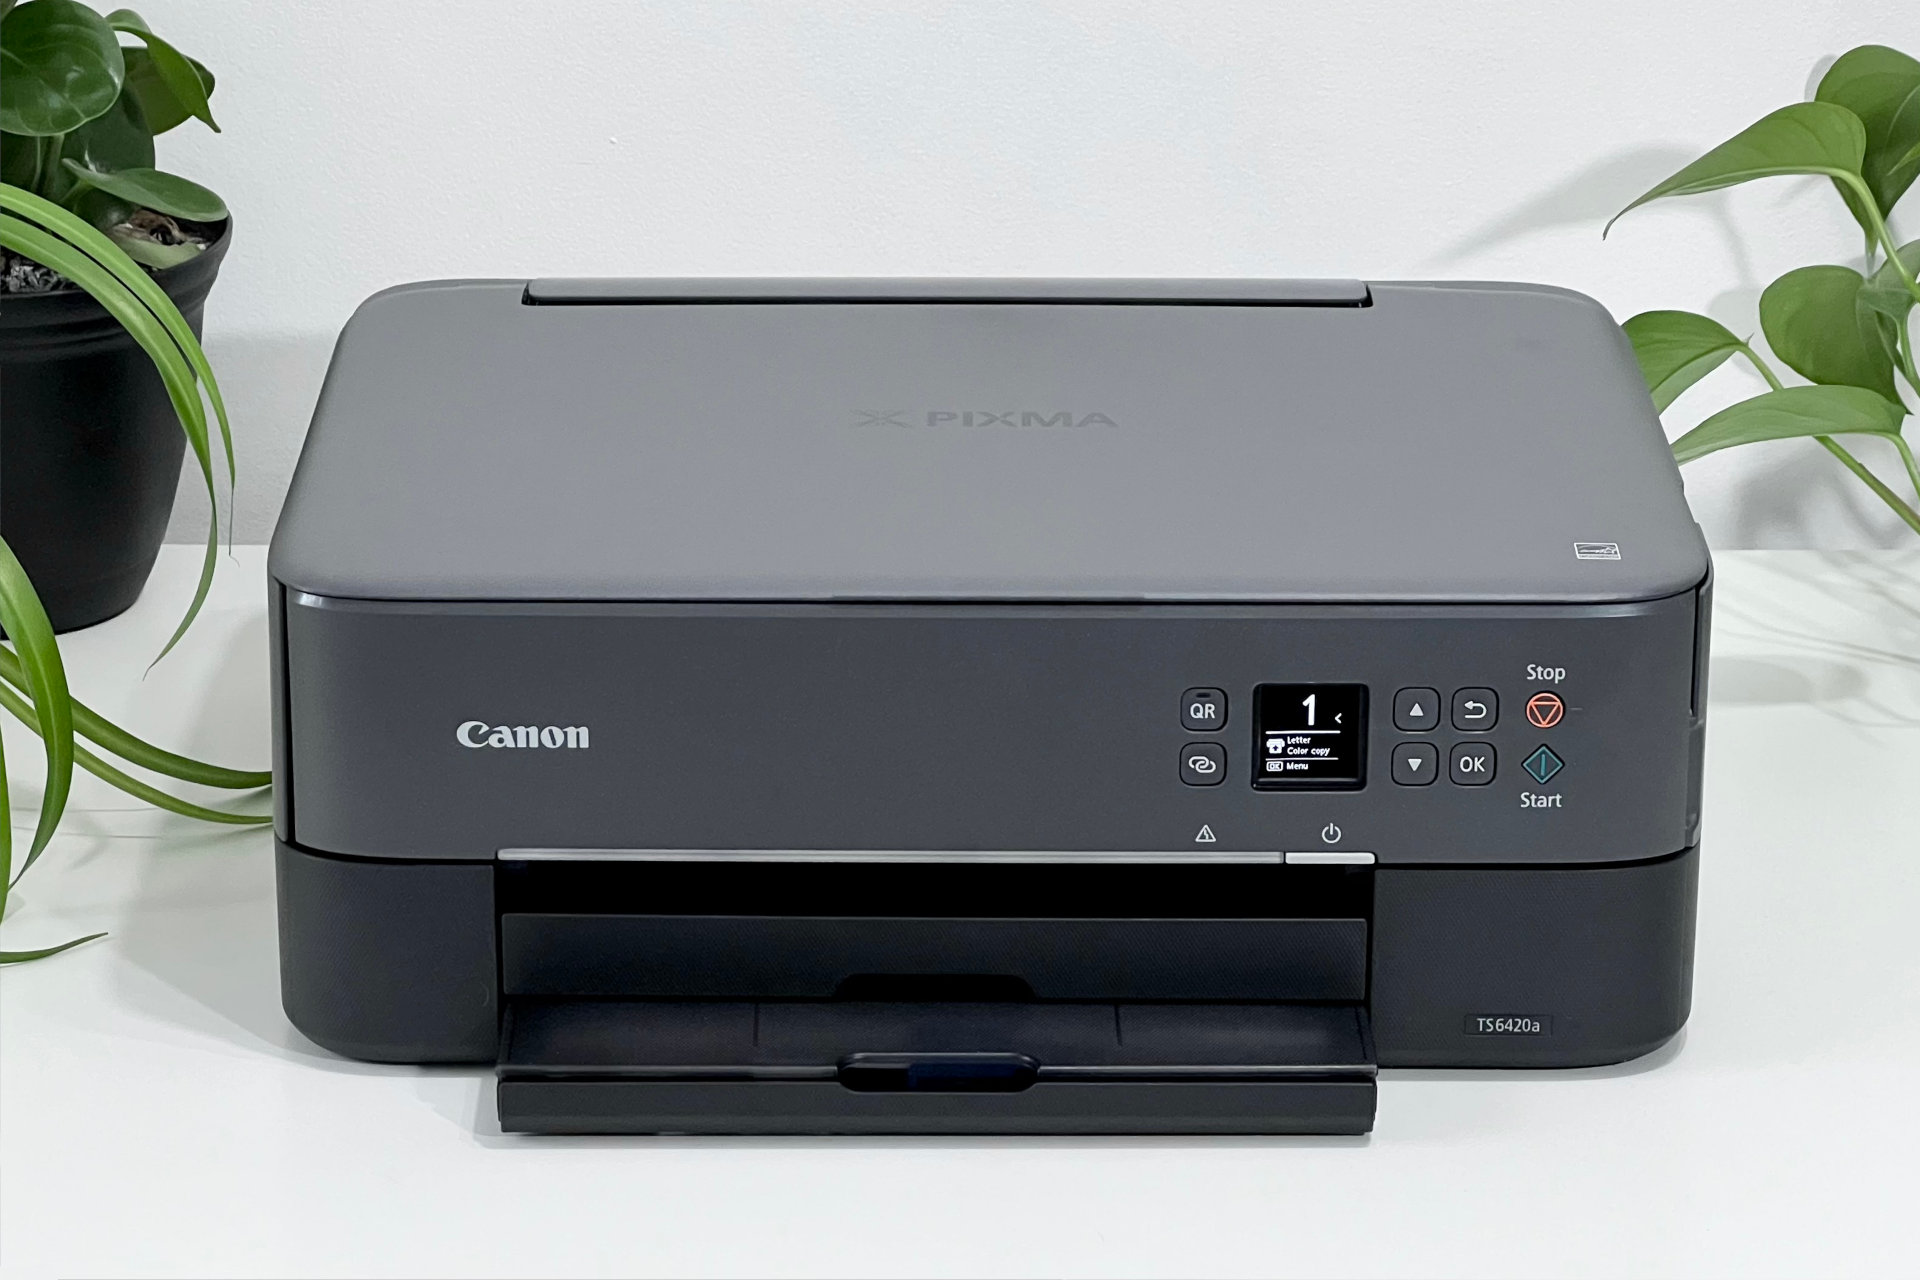 Canon PIXMA TS5350 Three-in-One Wireless Wi-Fi Printer, Black, Compare